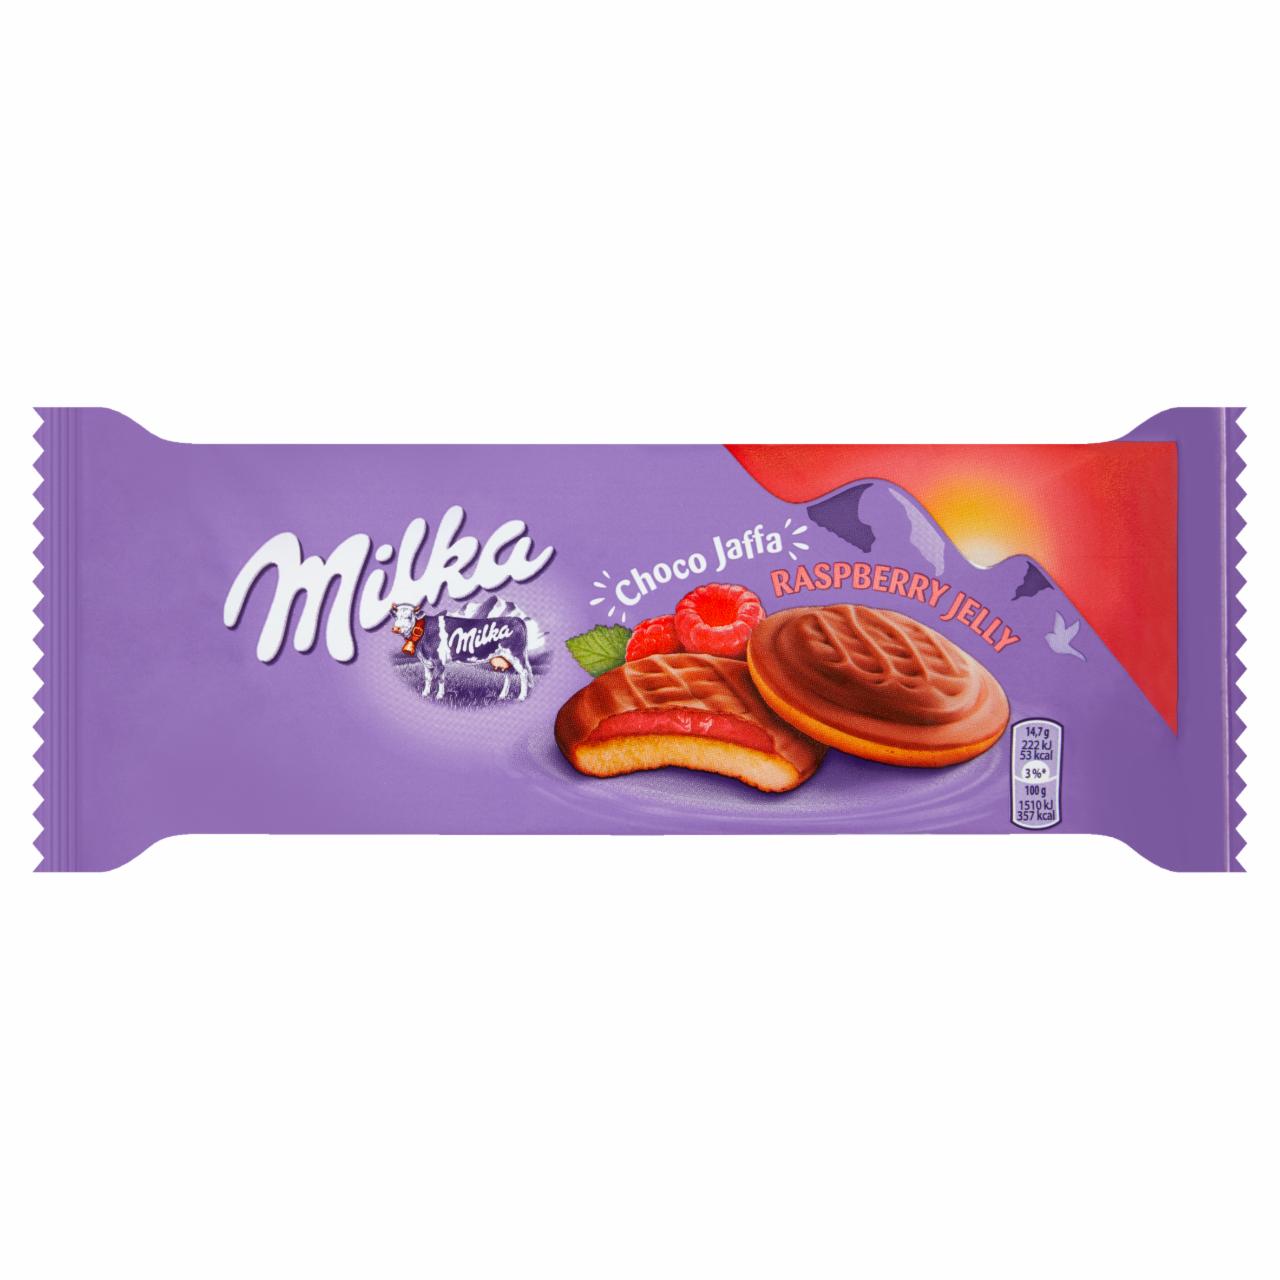 Zdjęcia - Milka Choco Jaffa Biszkopty z galaretką o smaku malinowym oblewane czekoladą mleczną 147 g